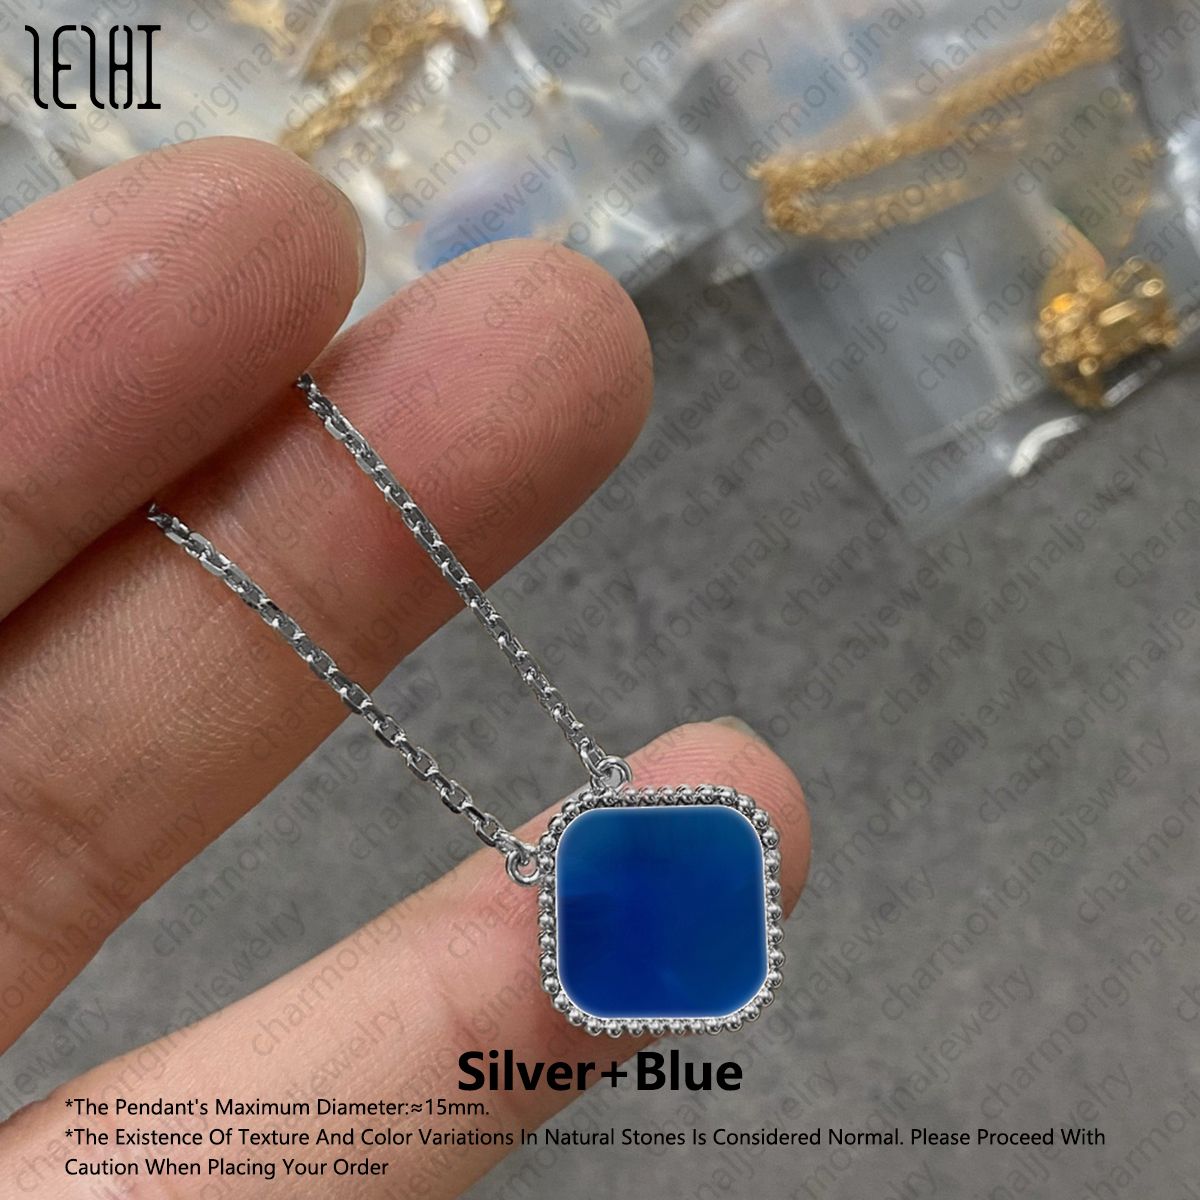 zilver+blauw